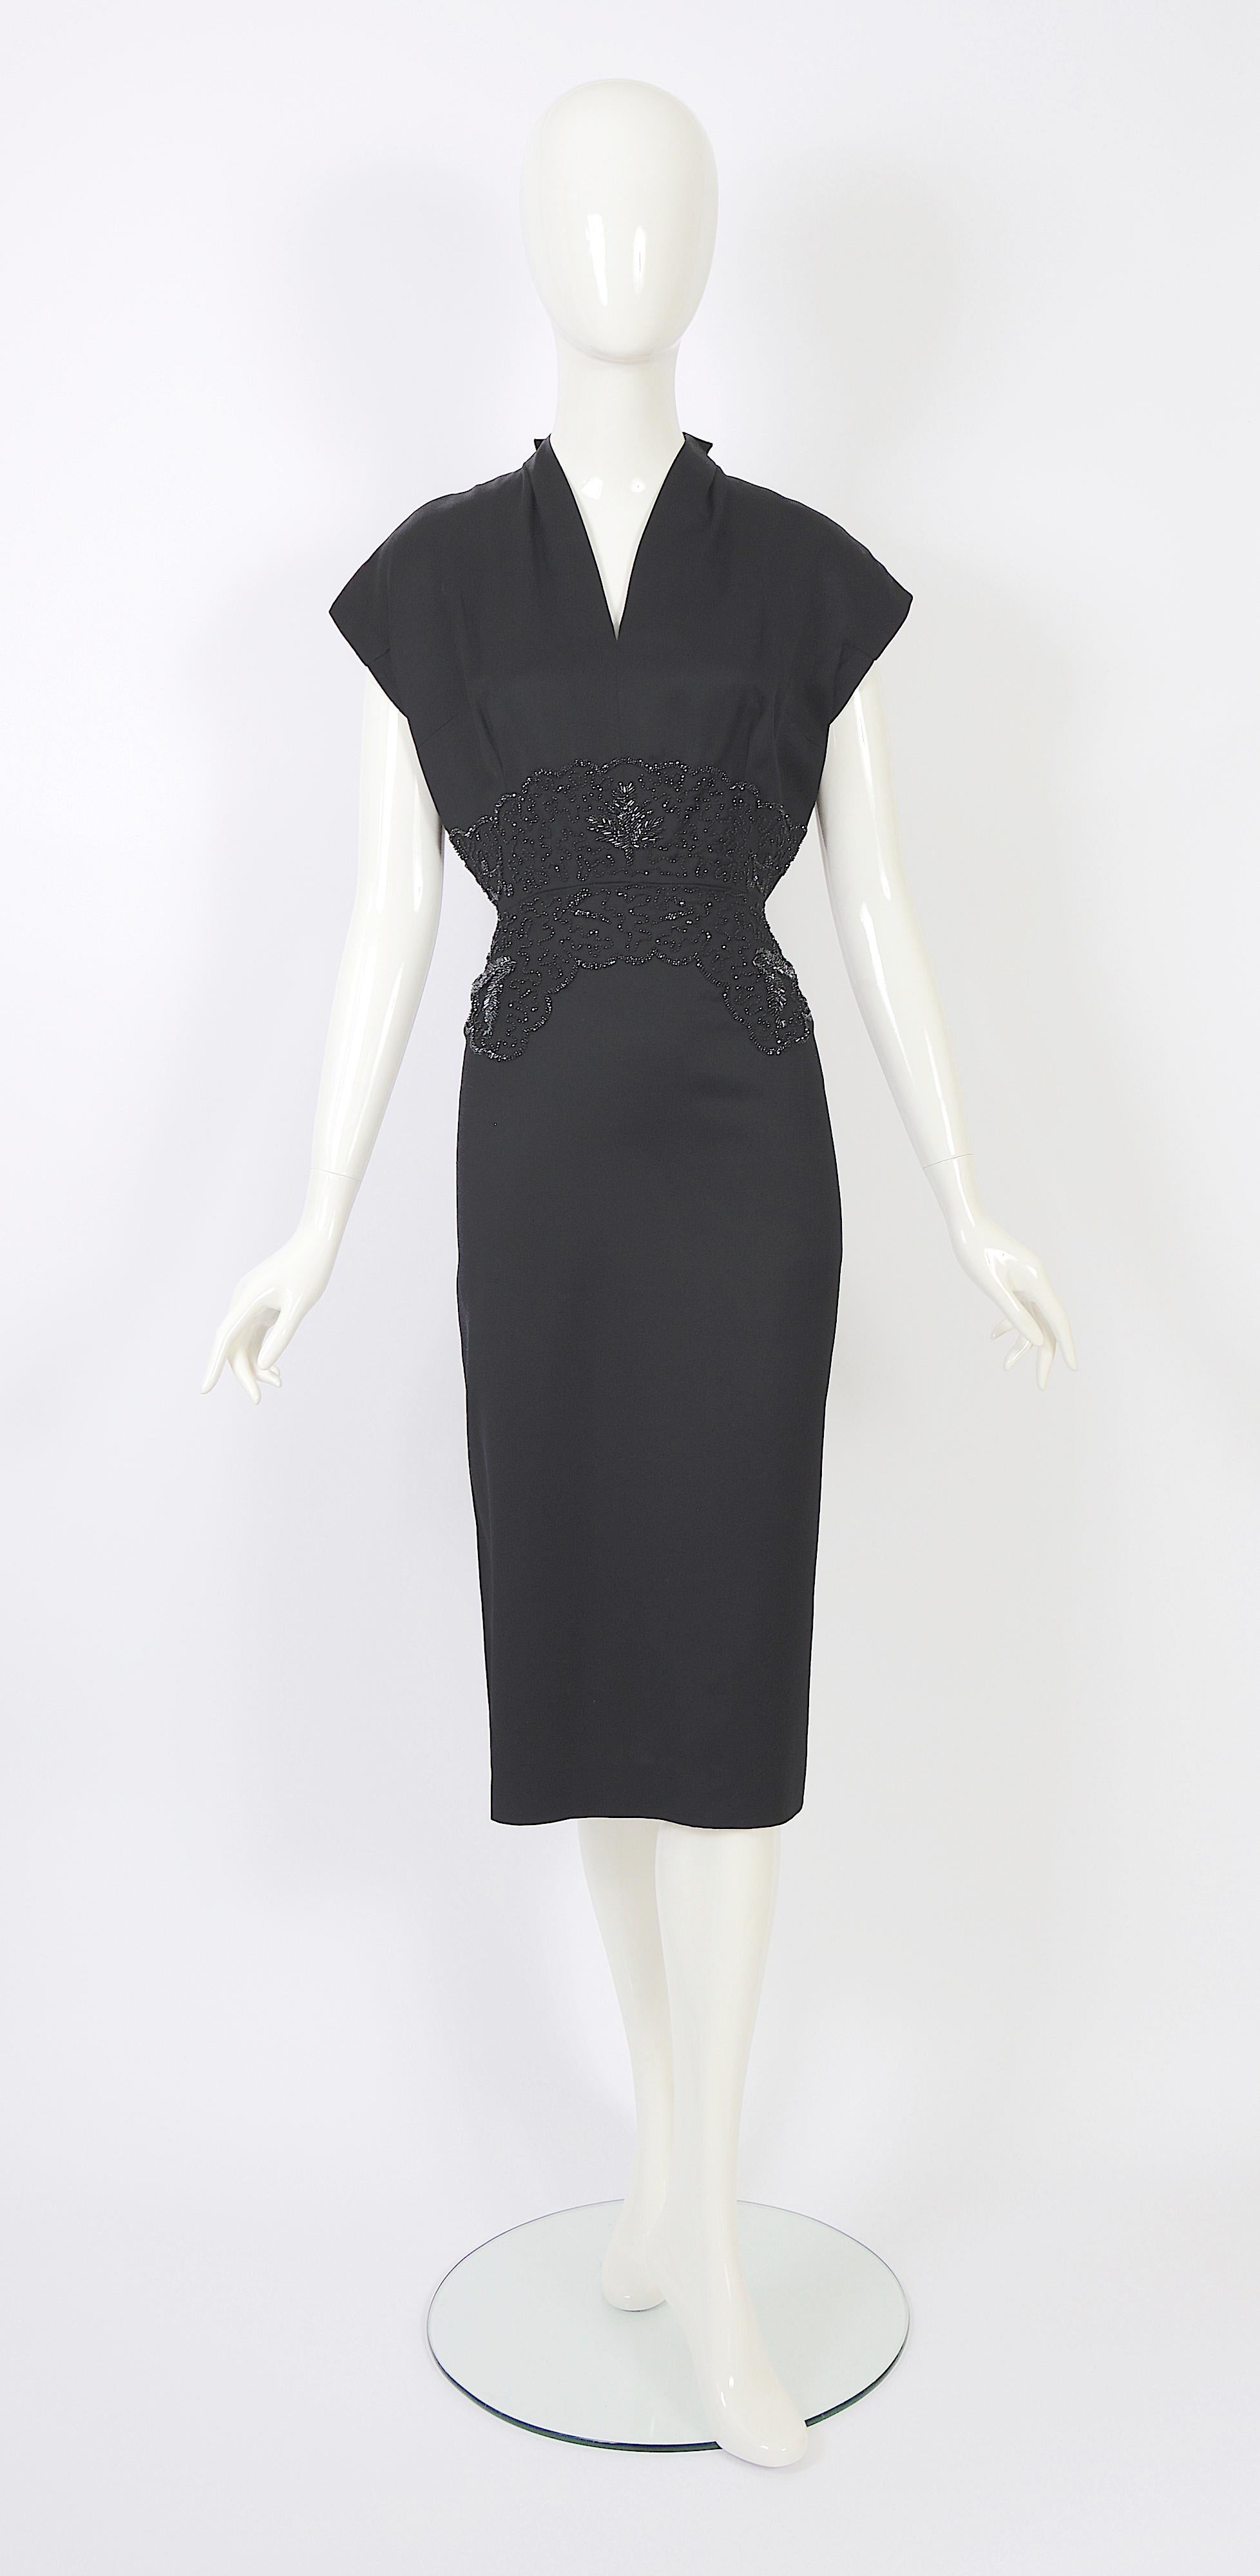 Dieses wunderschöne Haute-Couture-Kleid von Lancel aus den 1950er Jahren hat eine perlenbesetzte Taille und ist aus luxuriöser Wolle gefertigt. 
Das Kleid ist nicht gefüttert, da es damals üblich war, ein separates Unterwäschekleid oder einen Anzug